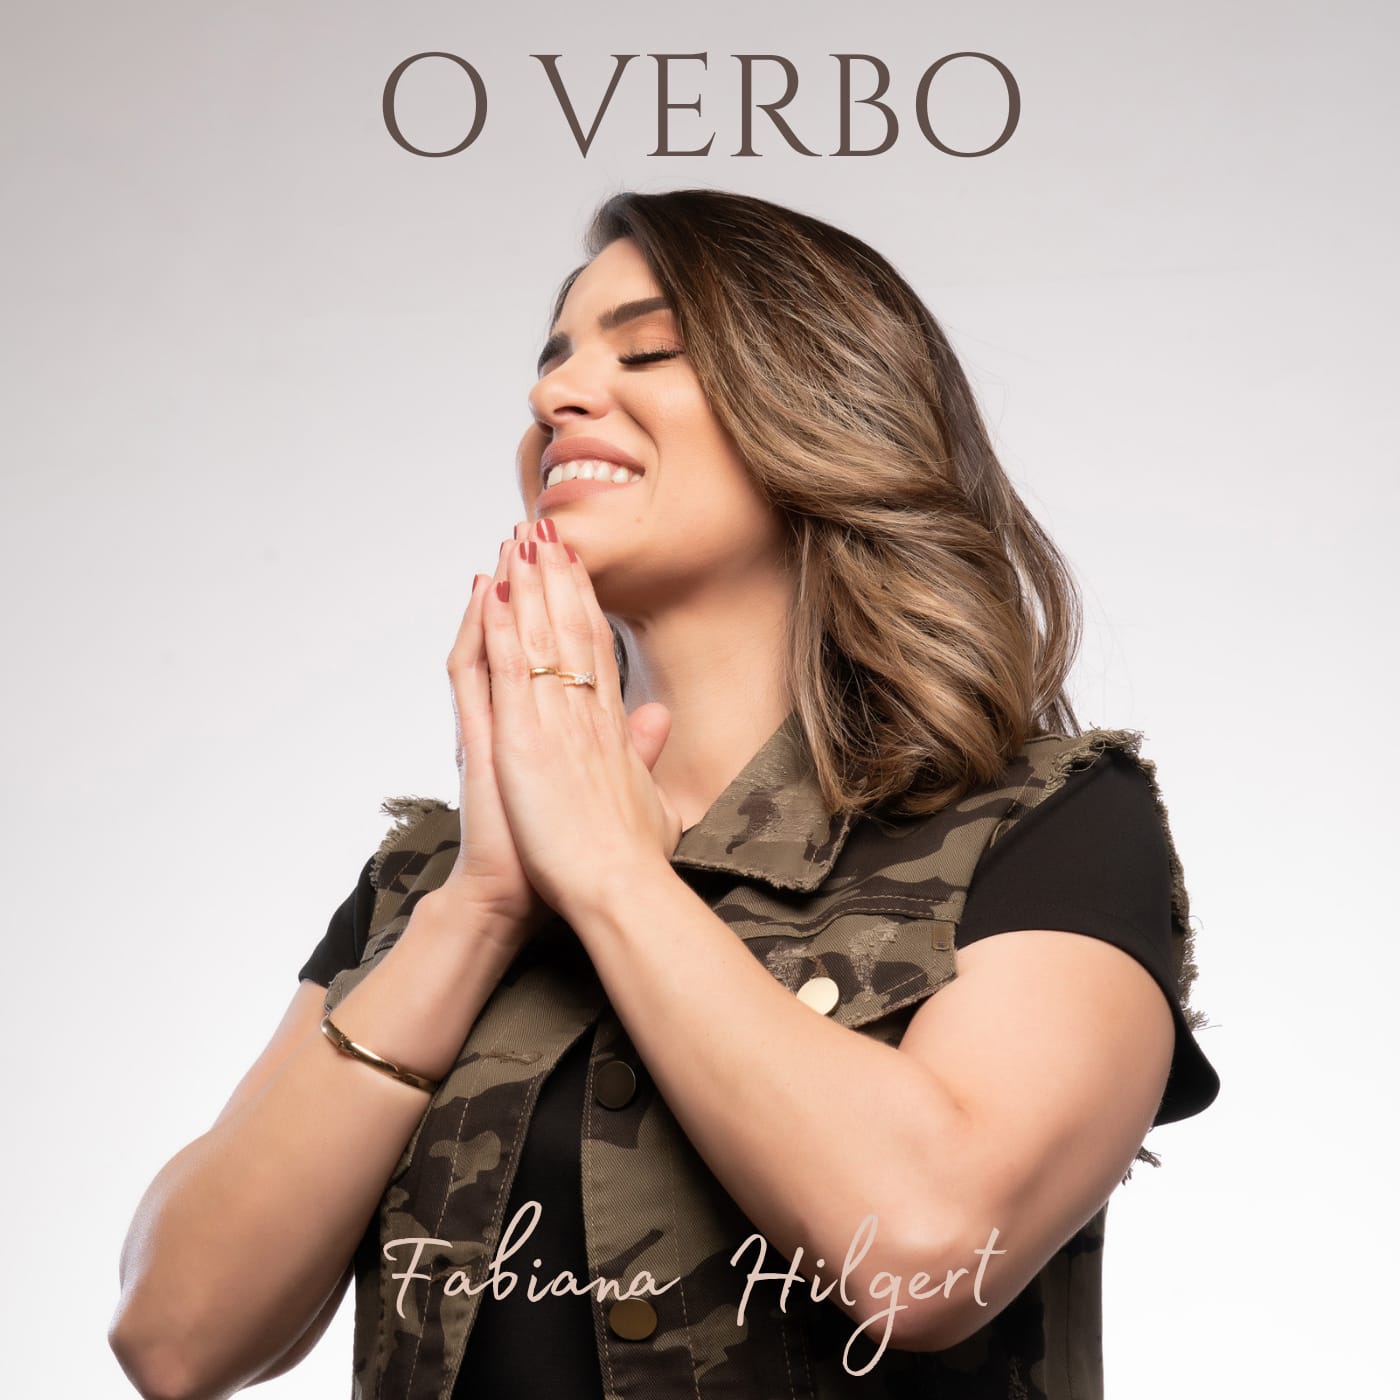 Fabiana Hilgert lança canção autoral “O Verbo” – Voltando ao início de tudo